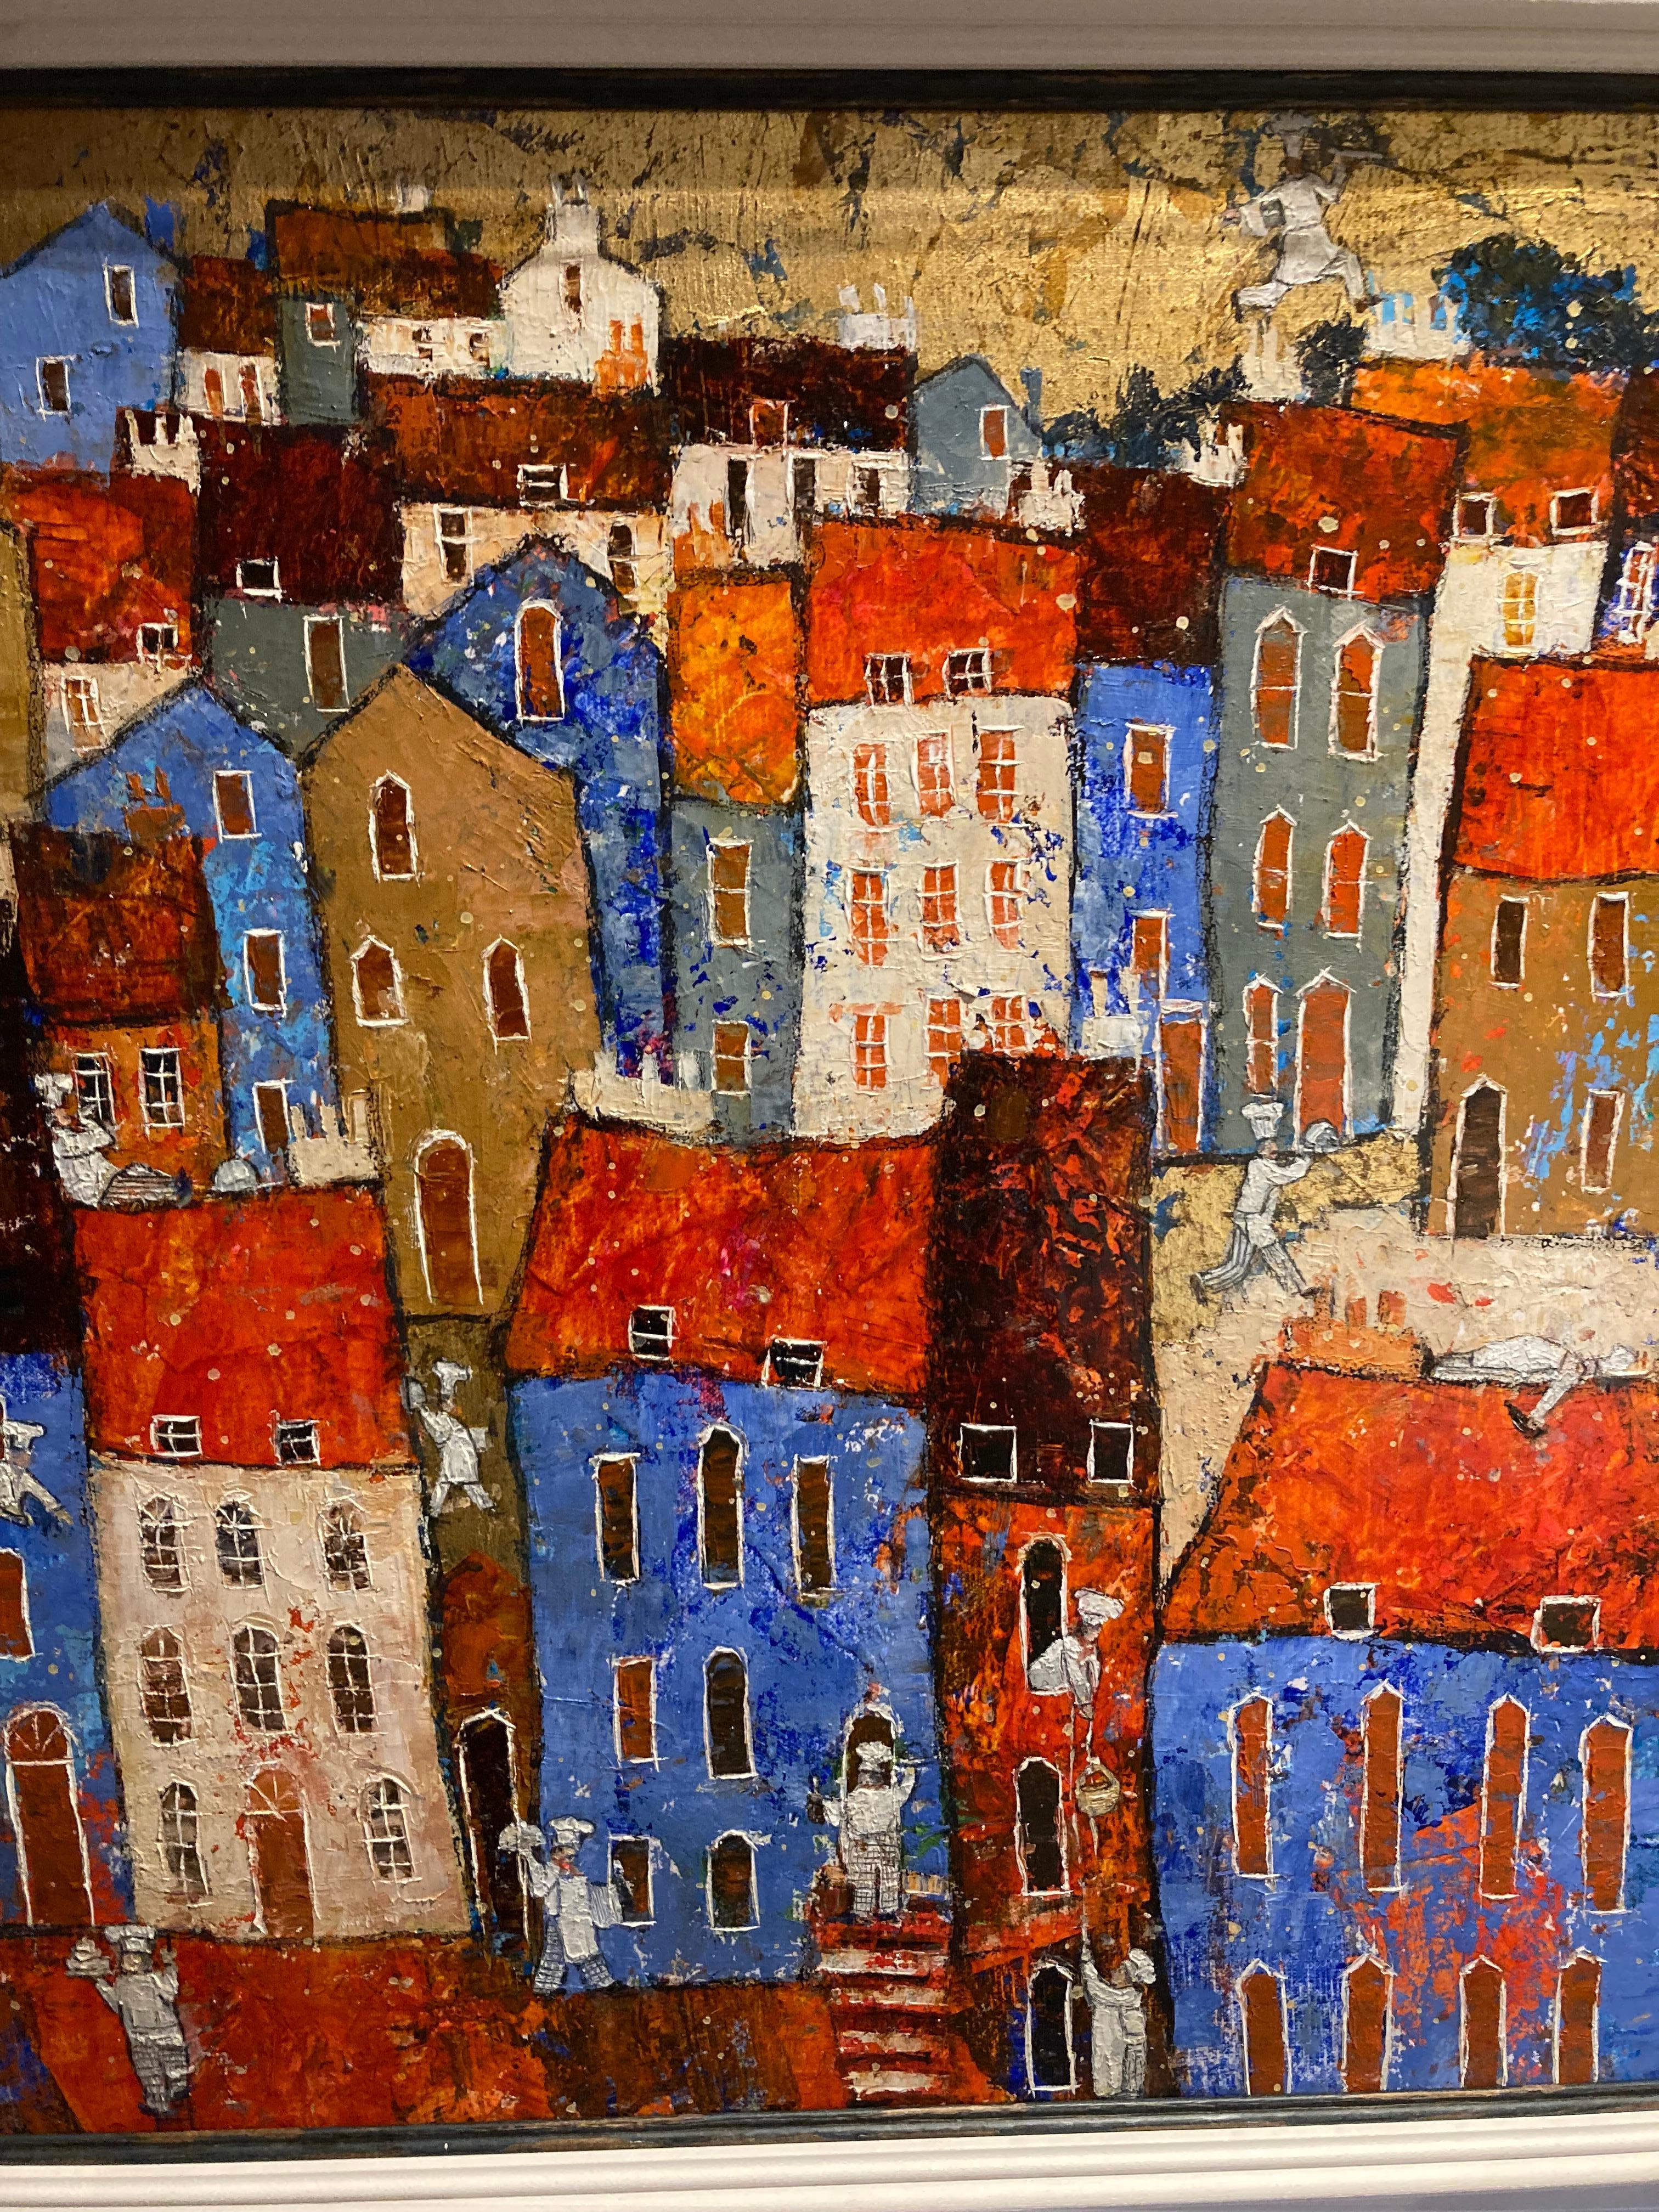 Cordon Bleu - peinture contemporaine figurative colorée de paysage urbain en techniques mixtes - Painting de Ellie Hesse